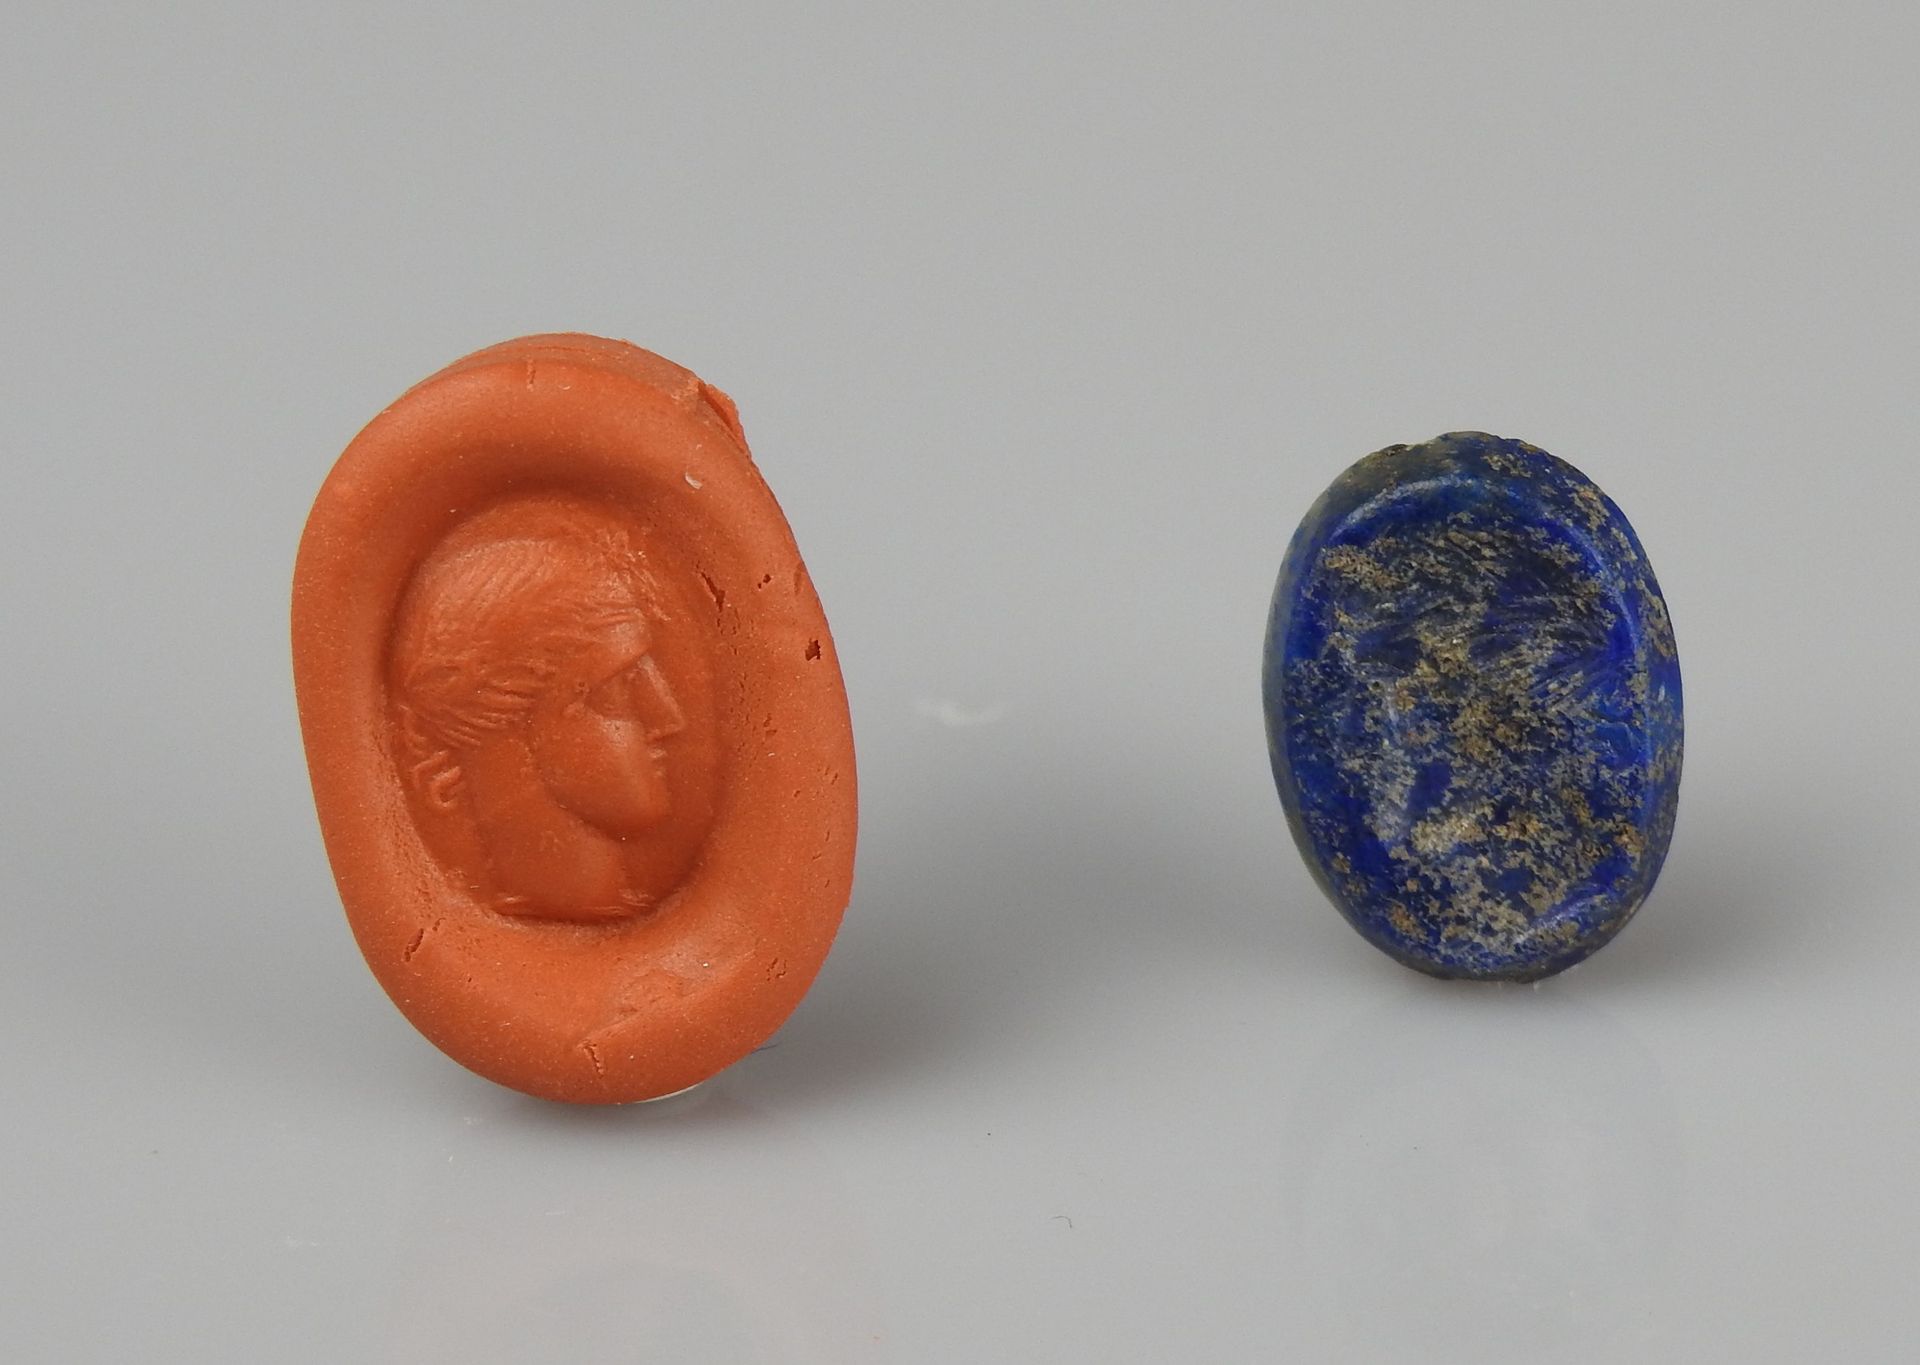 Null 代表一个年轻人的凹版画

青金石1.3厘米

罗马时期